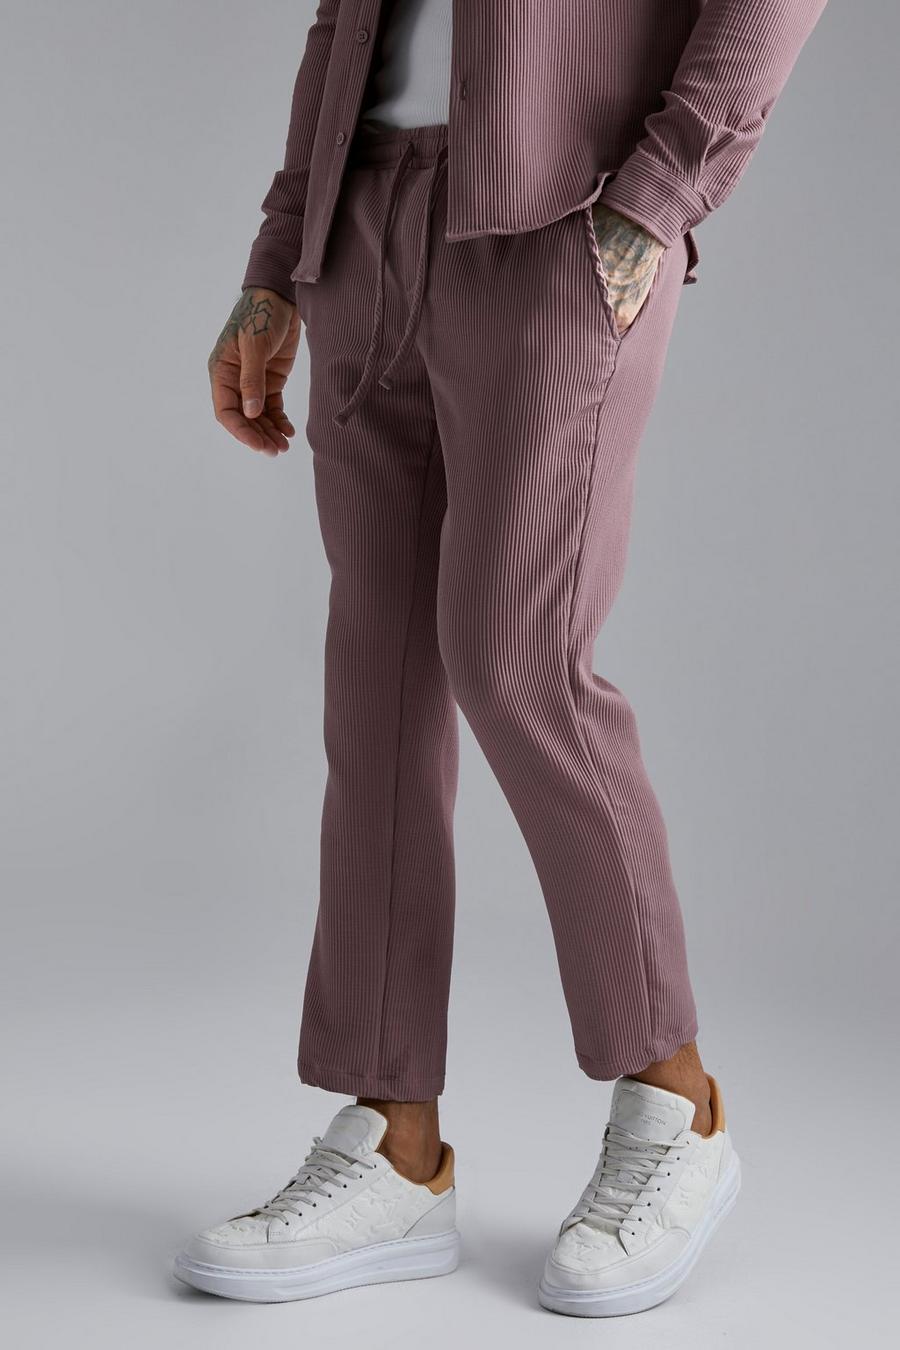 Pantalón pesquero plisado ajustado, Mauve purple